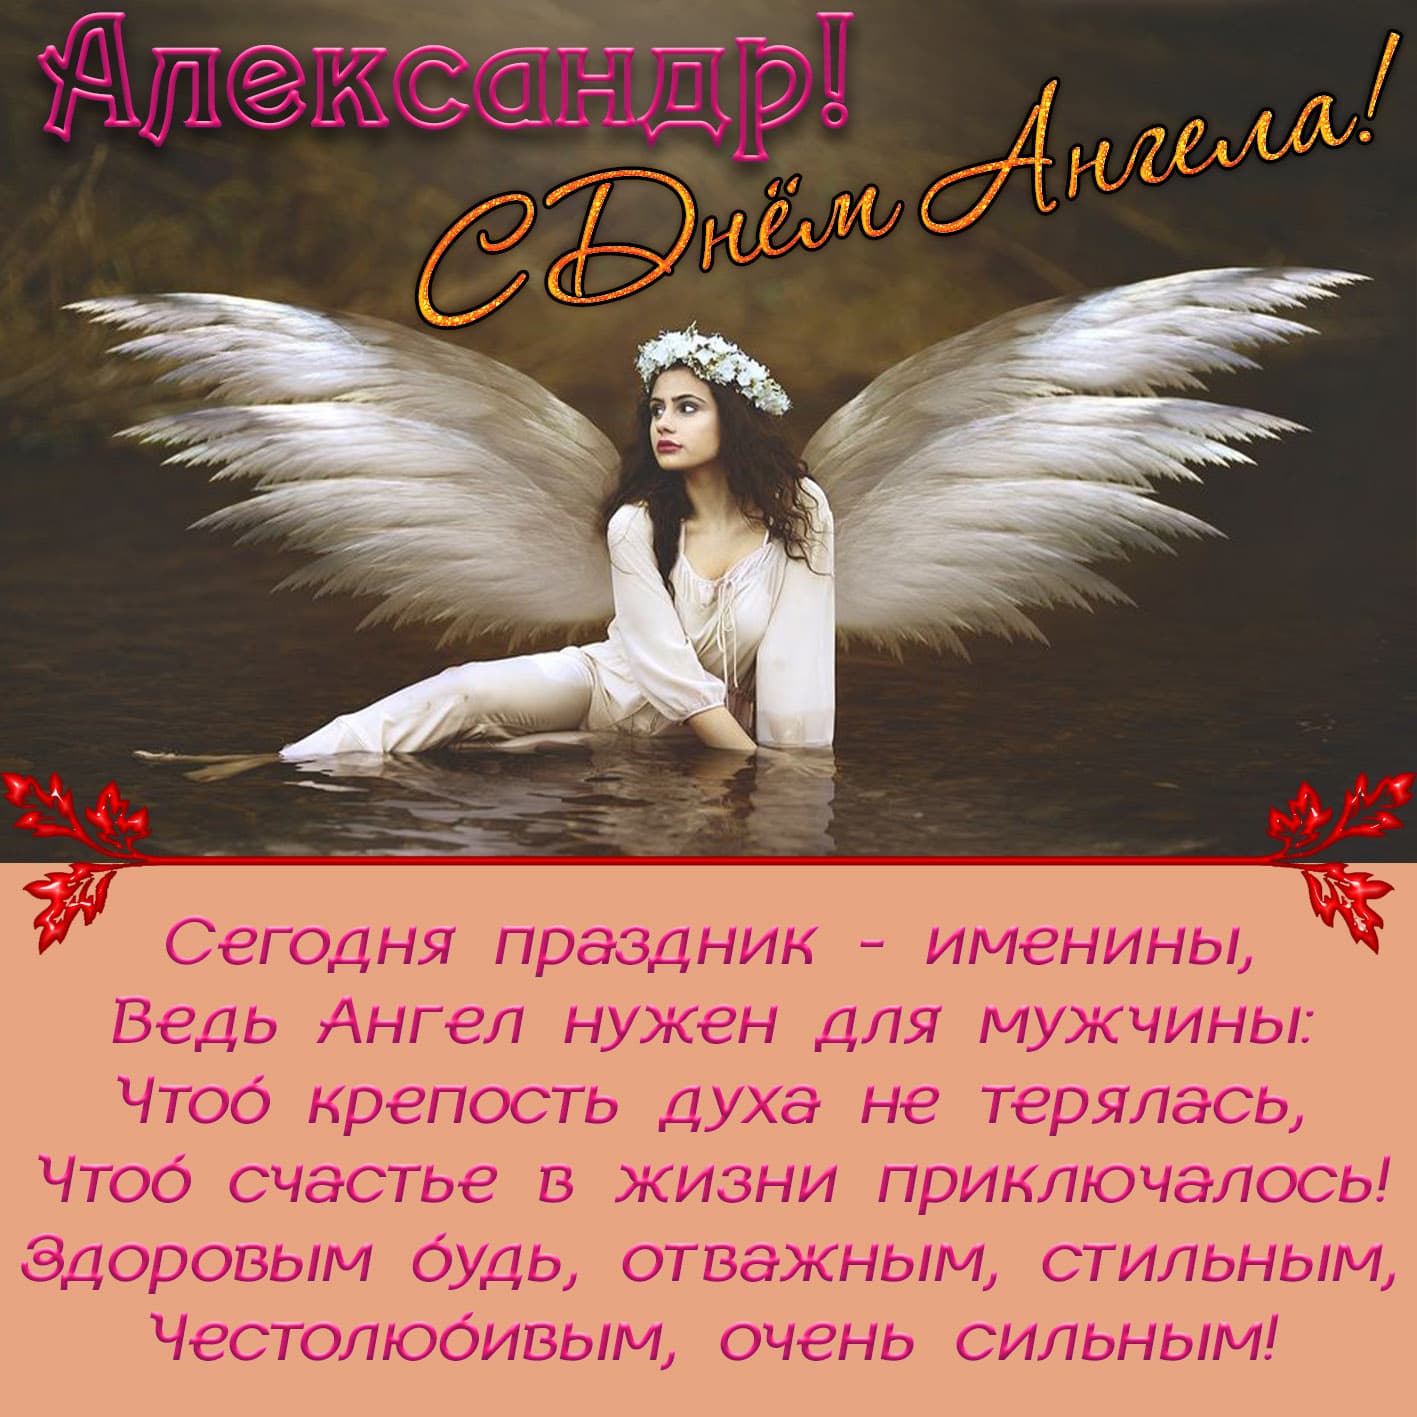 Картинка поздравительная в день ангела александру